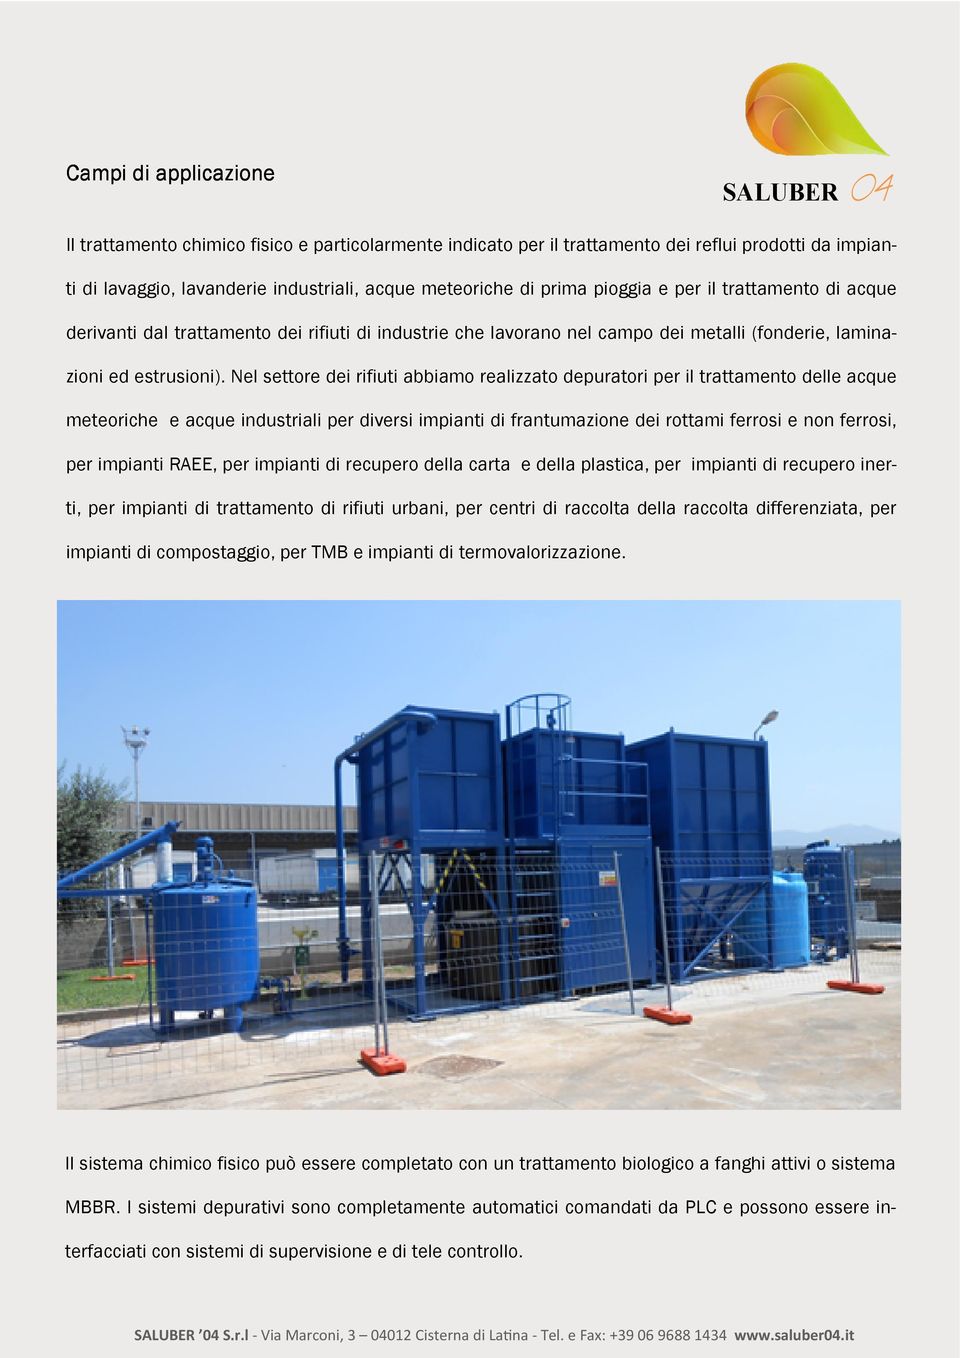 Nel settore dei rifiuti abbiamo realizzato depuratori per il trattamento delle acque meteoriche e acque industriali per diversi impianti di frantumazione dei rottami ferrosi e non ferrosi, per